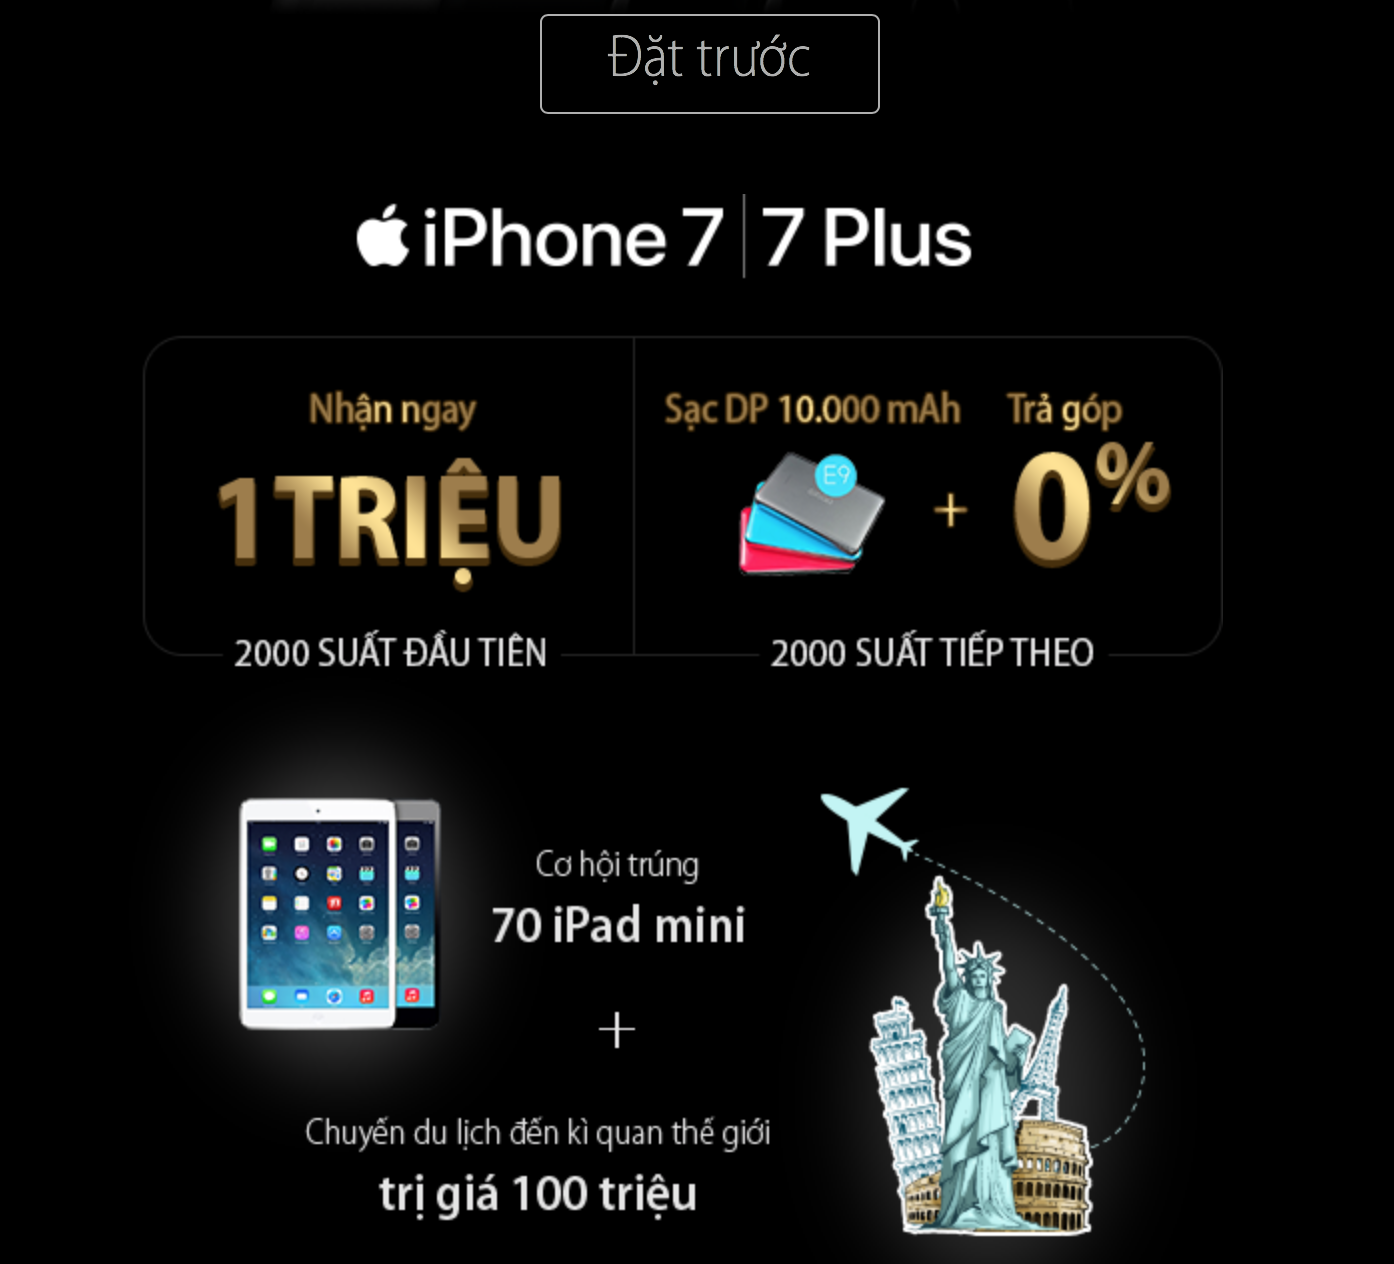 Mua iPhone 7 và 7 Plus tại FPTShop, Viễn Thông A, TGDĐ, Viettel – có nhiều khuyến mại (2815)